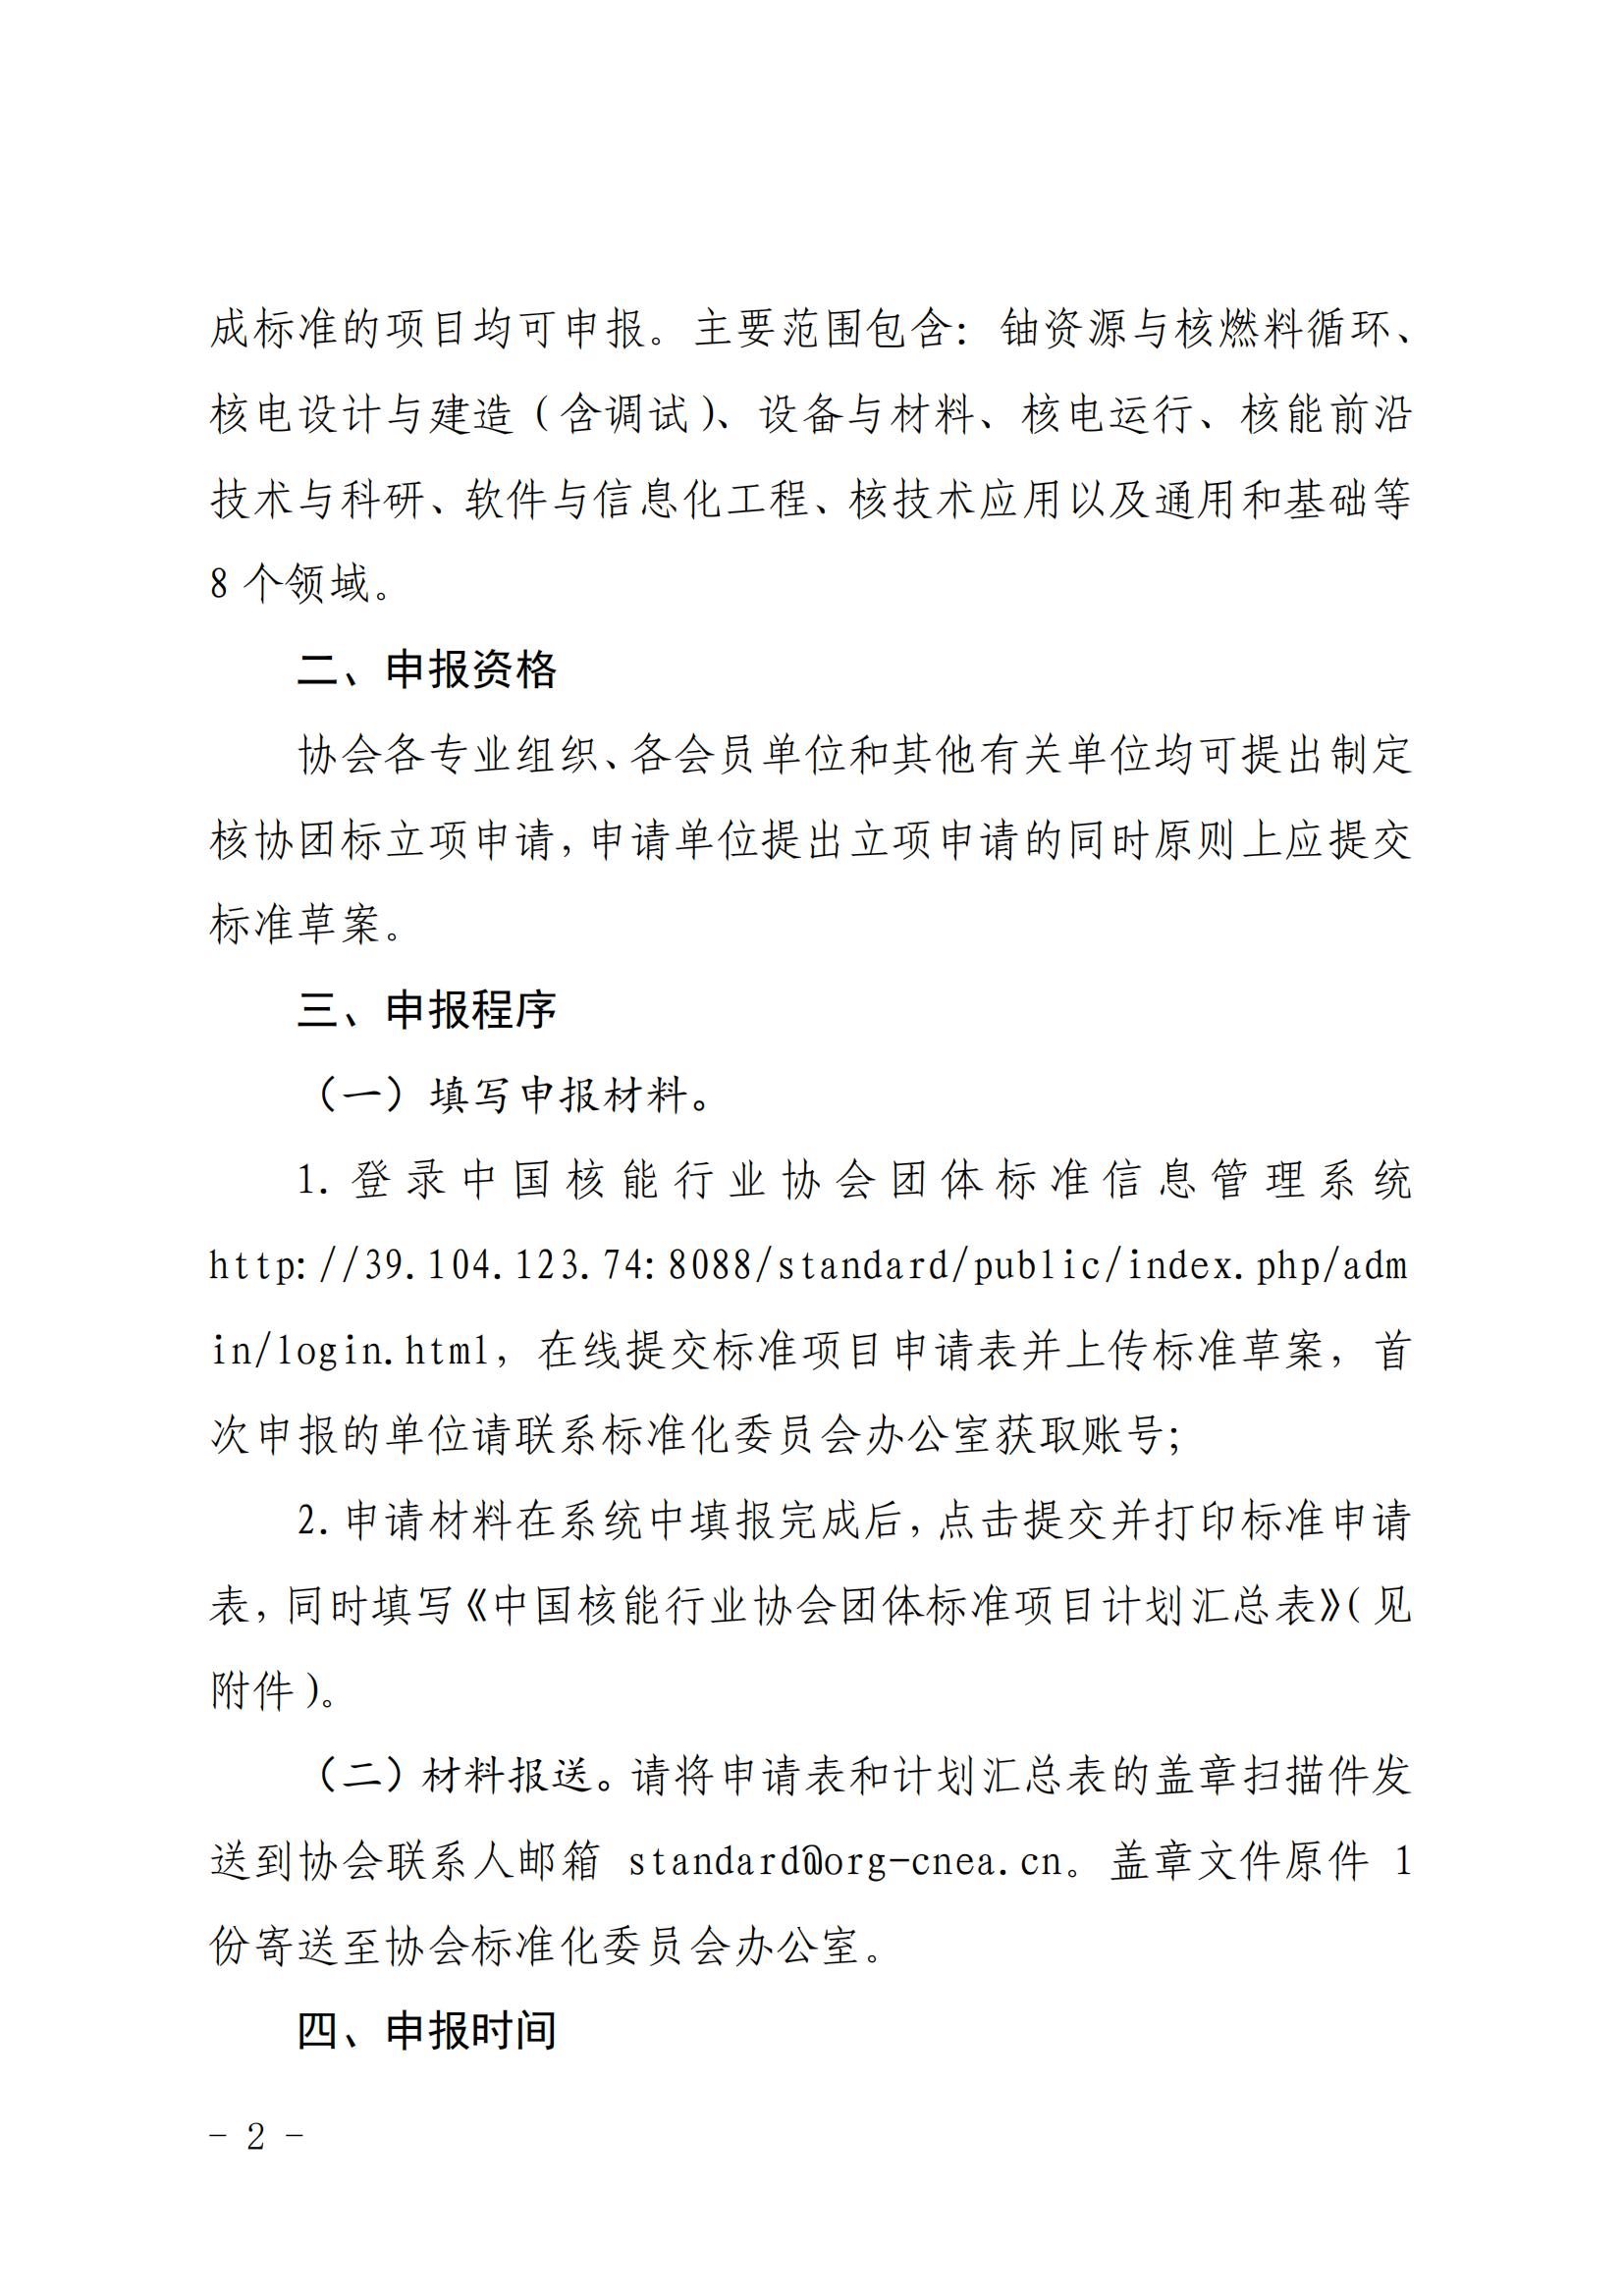 关于征集2022年度中国核能行业协会团体标准项目的通知 (1)_01.jpg